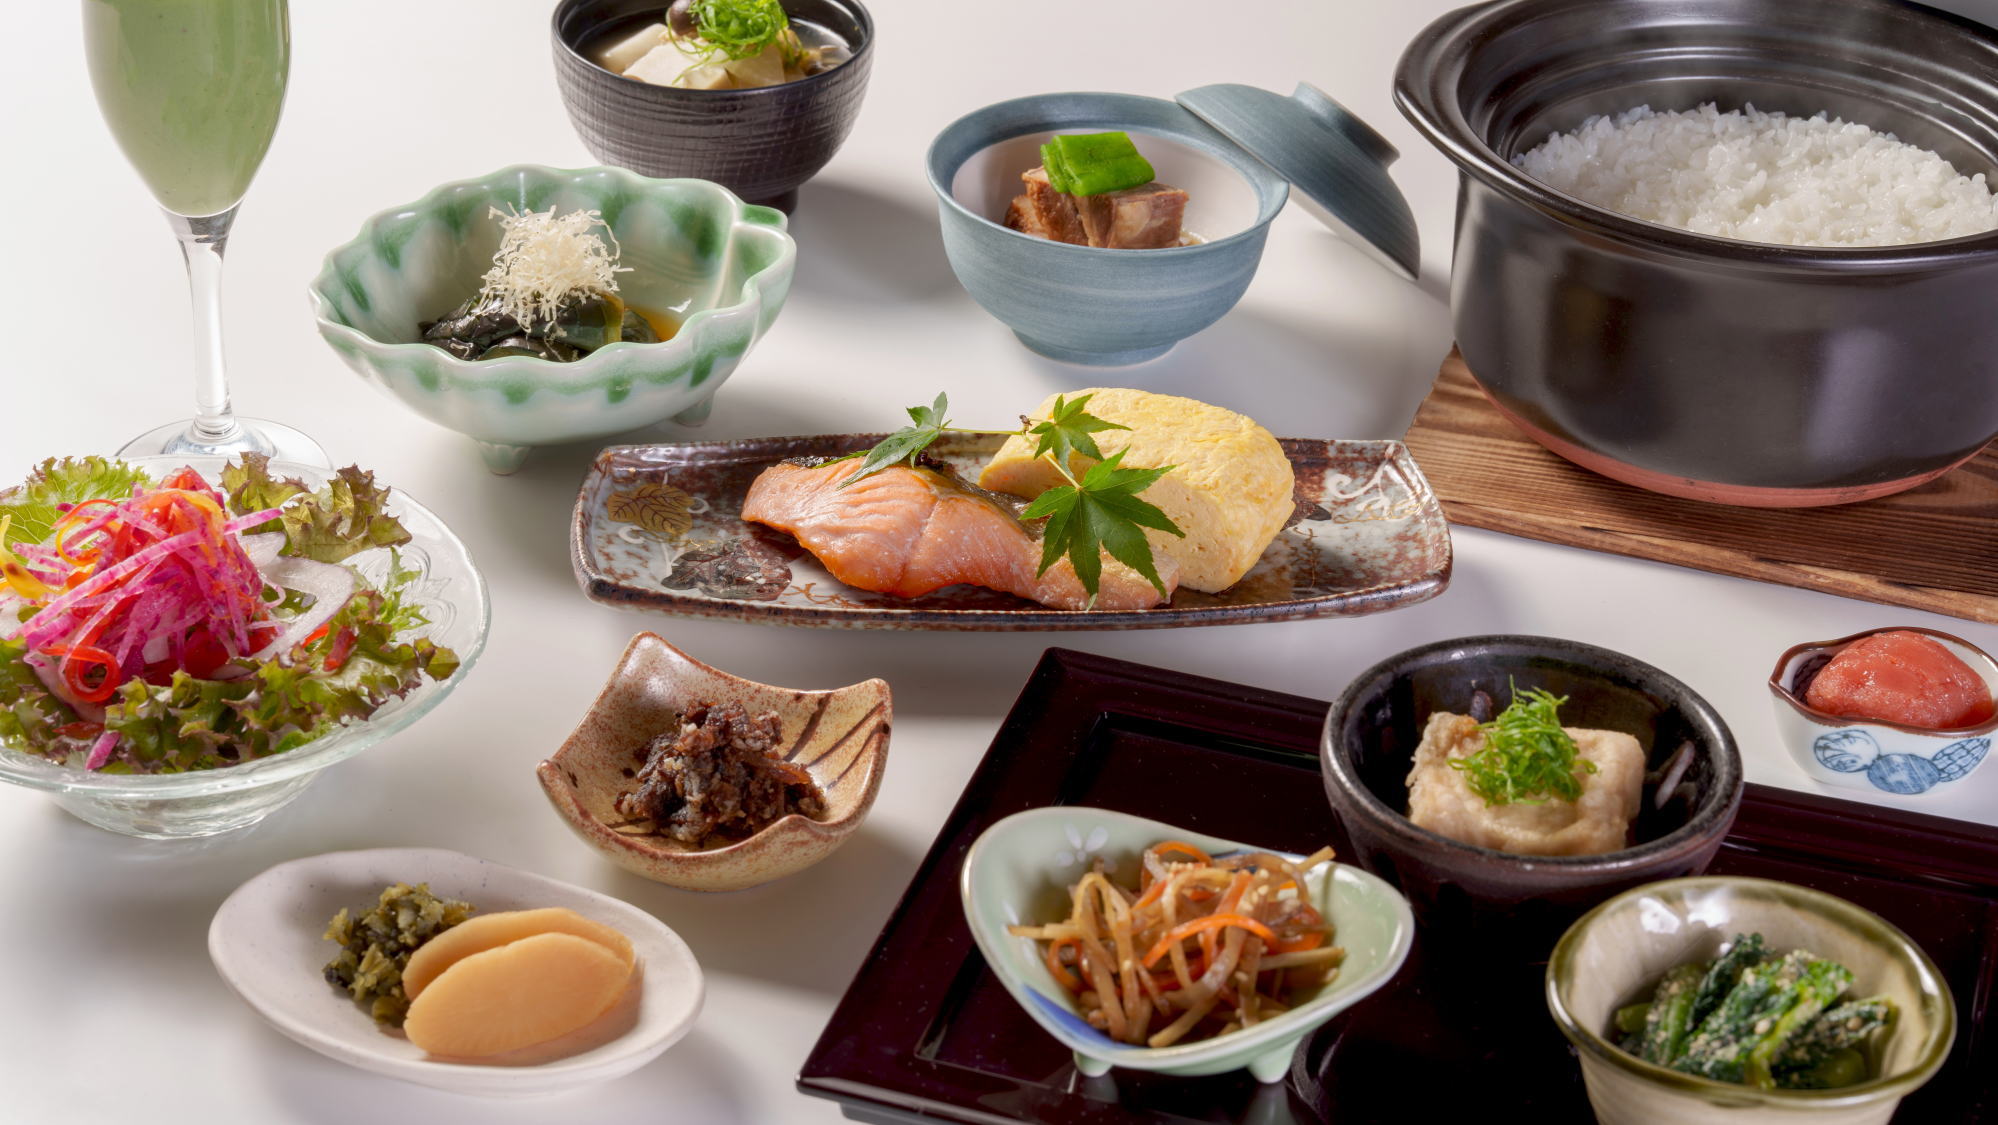 和朝食「選べる朝食」北海道ならではの、海の幸もふんだんに使った和朝食です。※イメージ